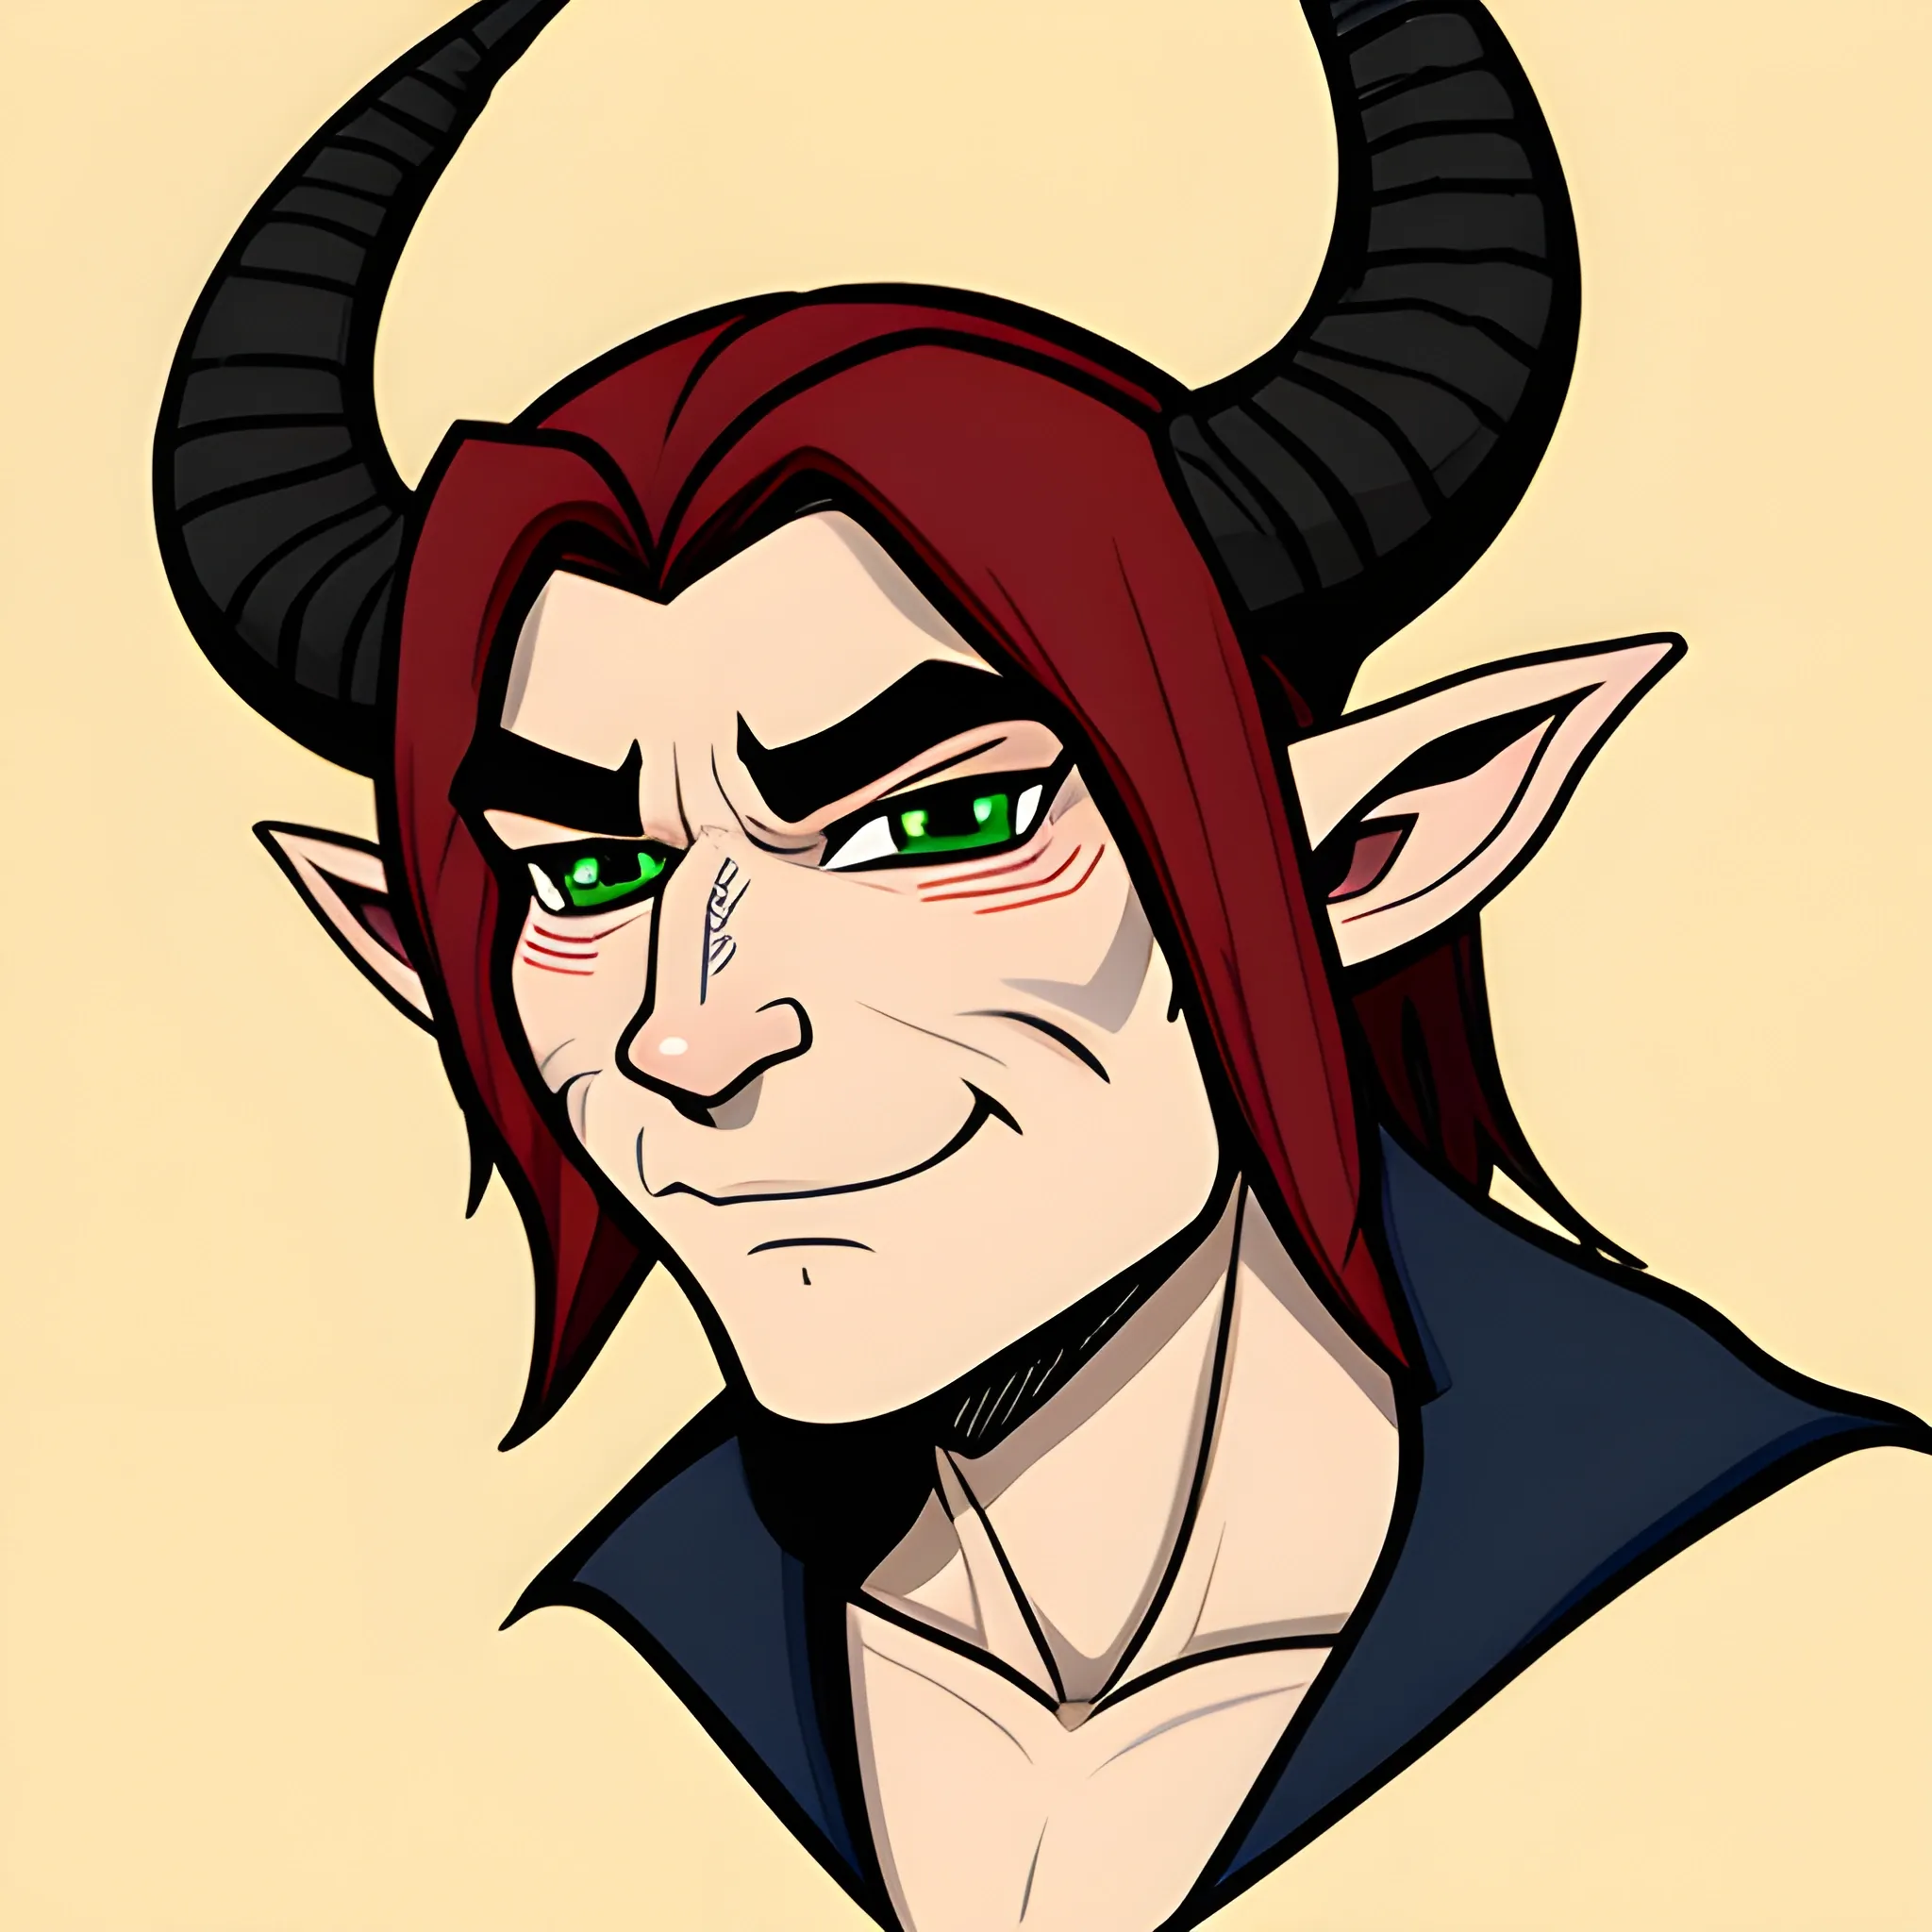 Male Elf with horns,Cartoon